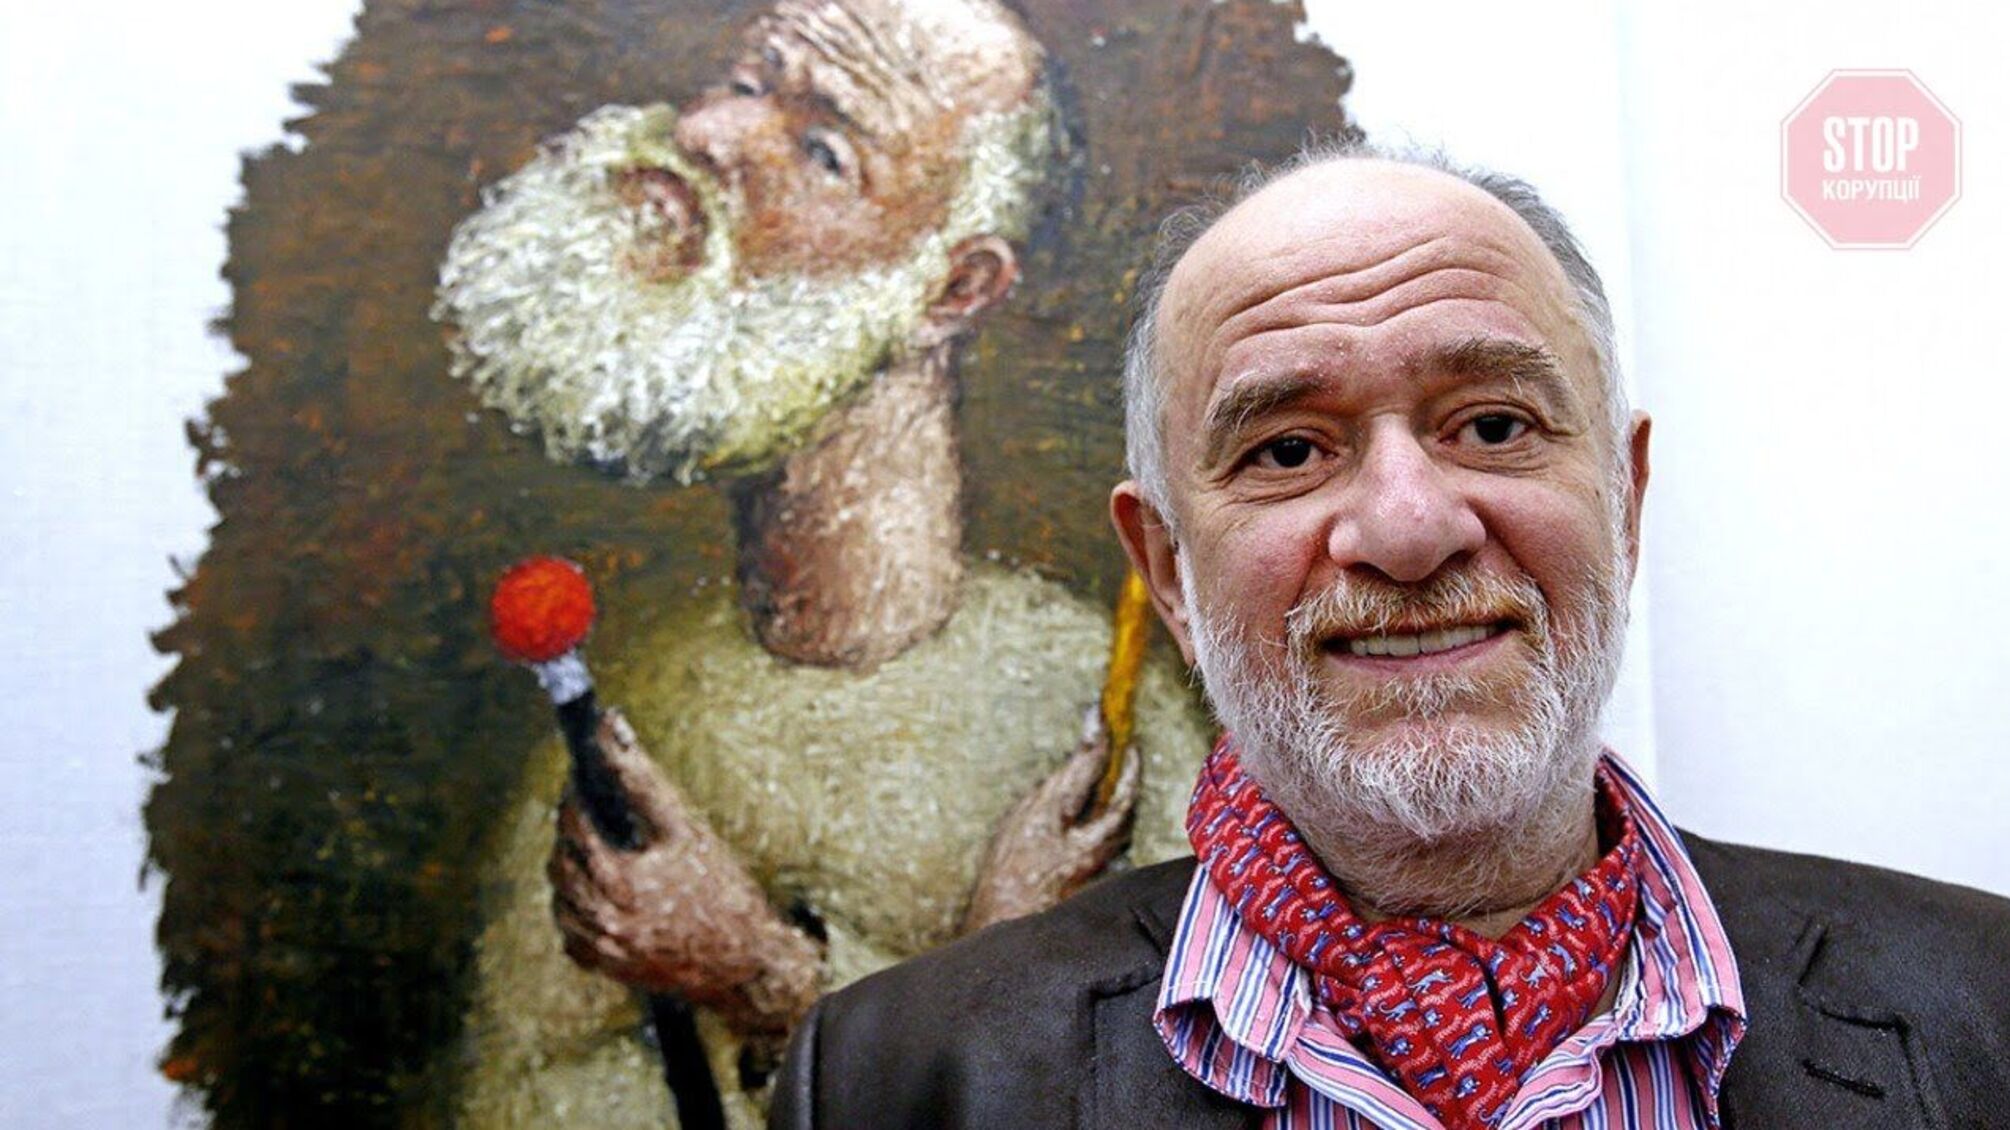 Умер художник и руководитель Одесского художественного музея Ройтбурд